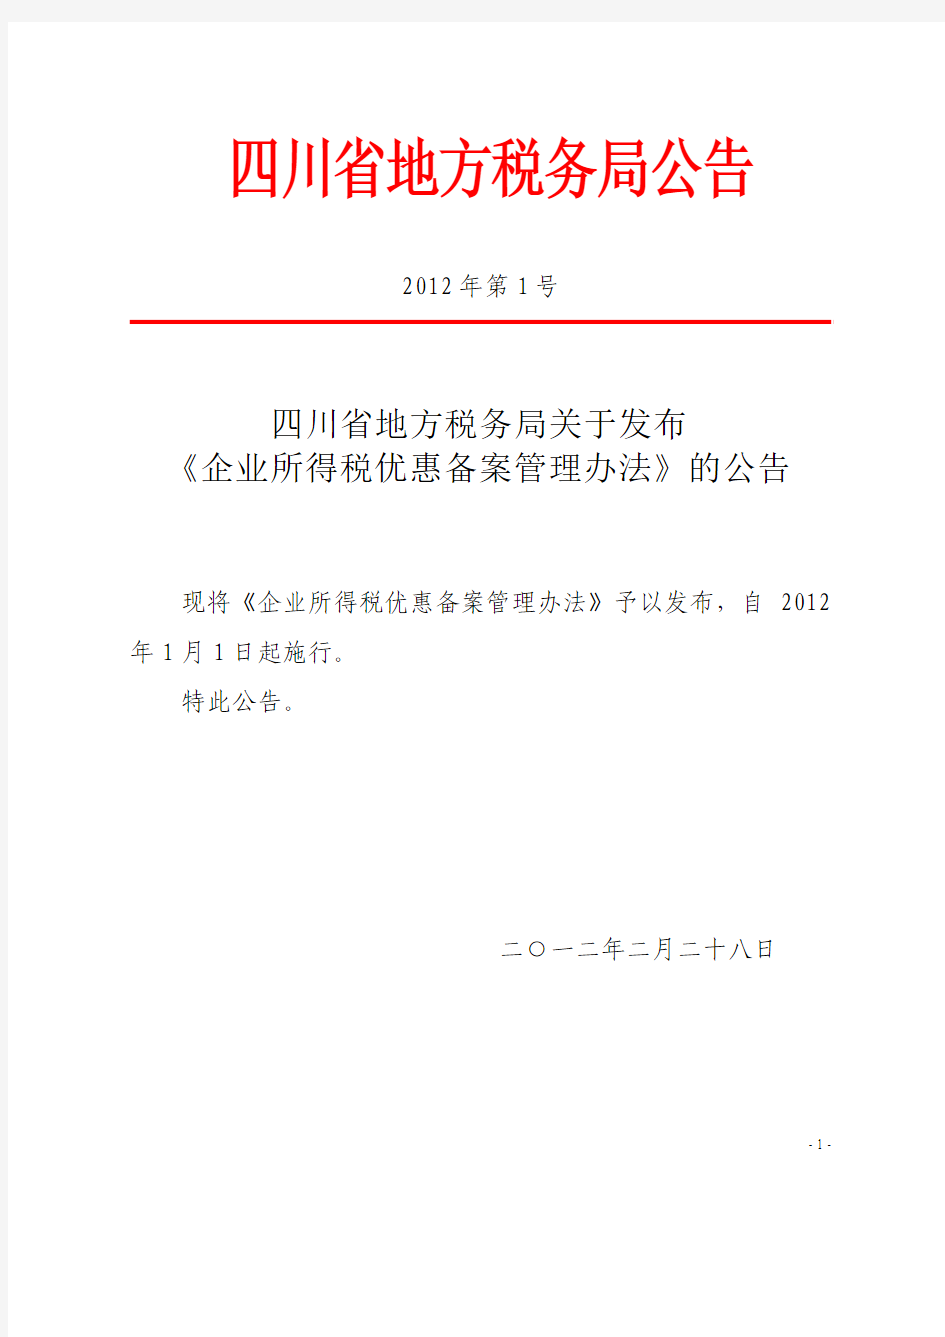 川地税2012年1号公告：四川省地方税务局关于发布《企业所得税优惠备案管理办法》的公告